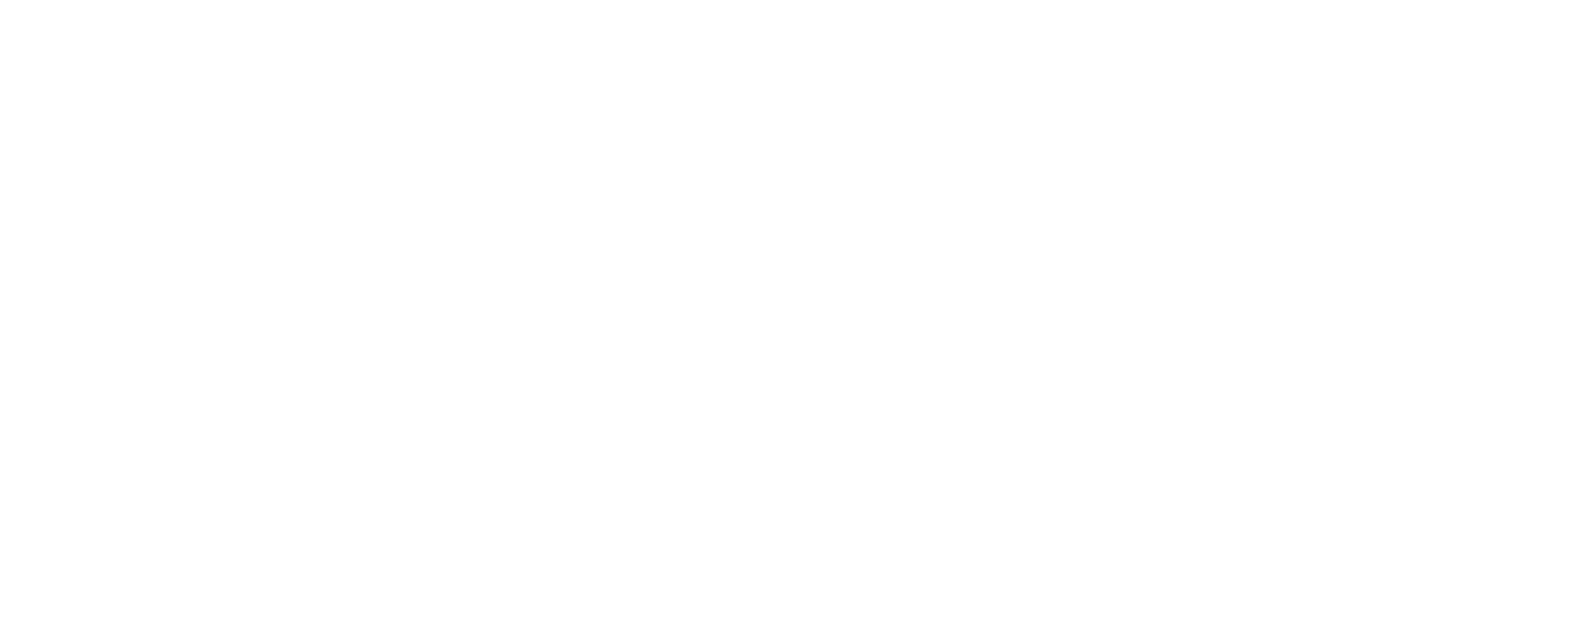 Arbe Robotics logo large for dark backgrounds (transparent PNG)